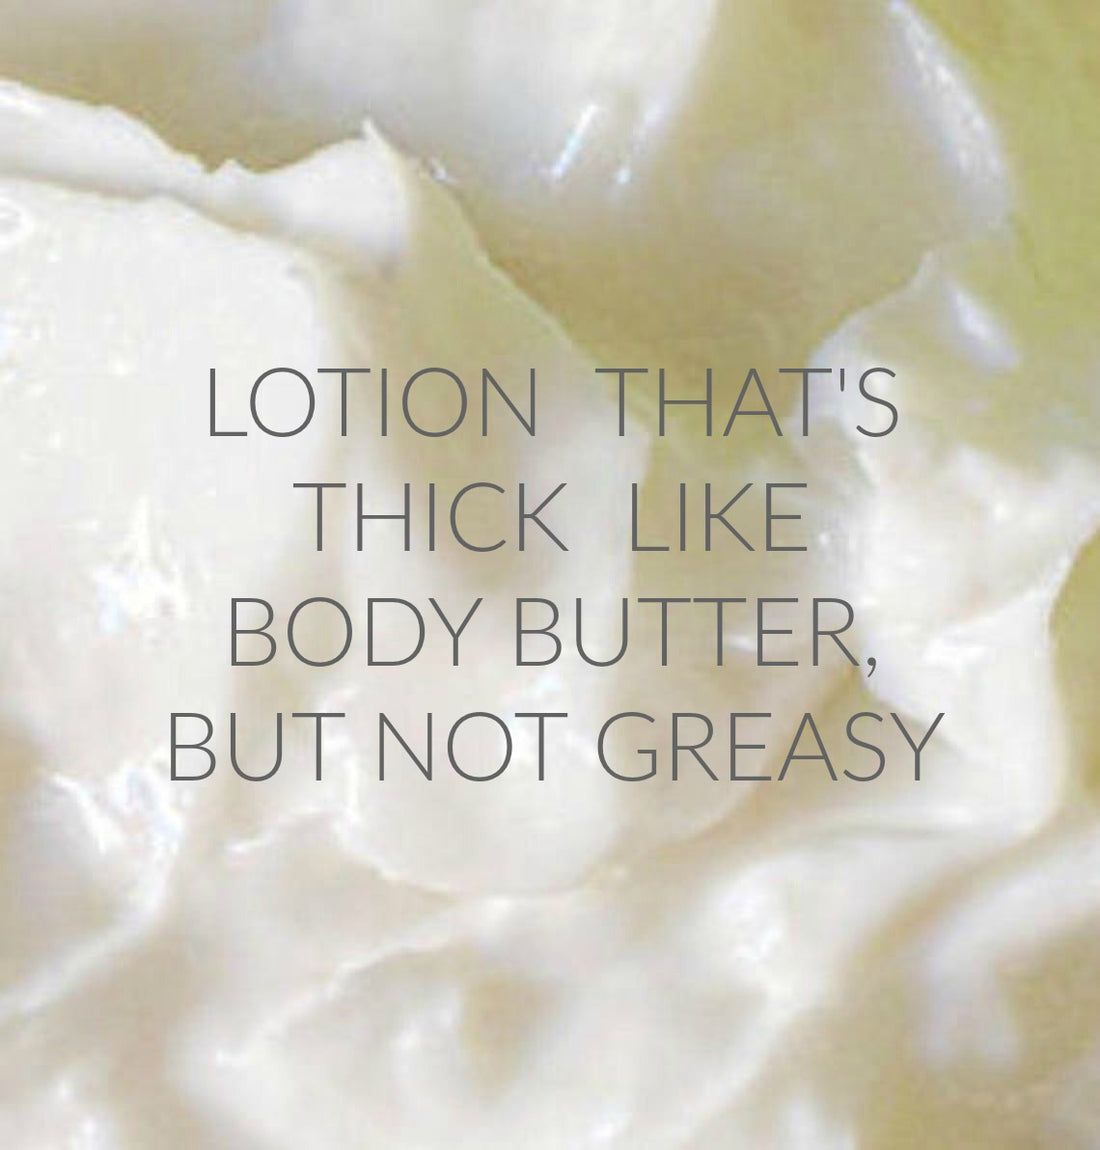 CITRUS CILANTRO scented water free, vegan non-greasy Body Butter Lotion